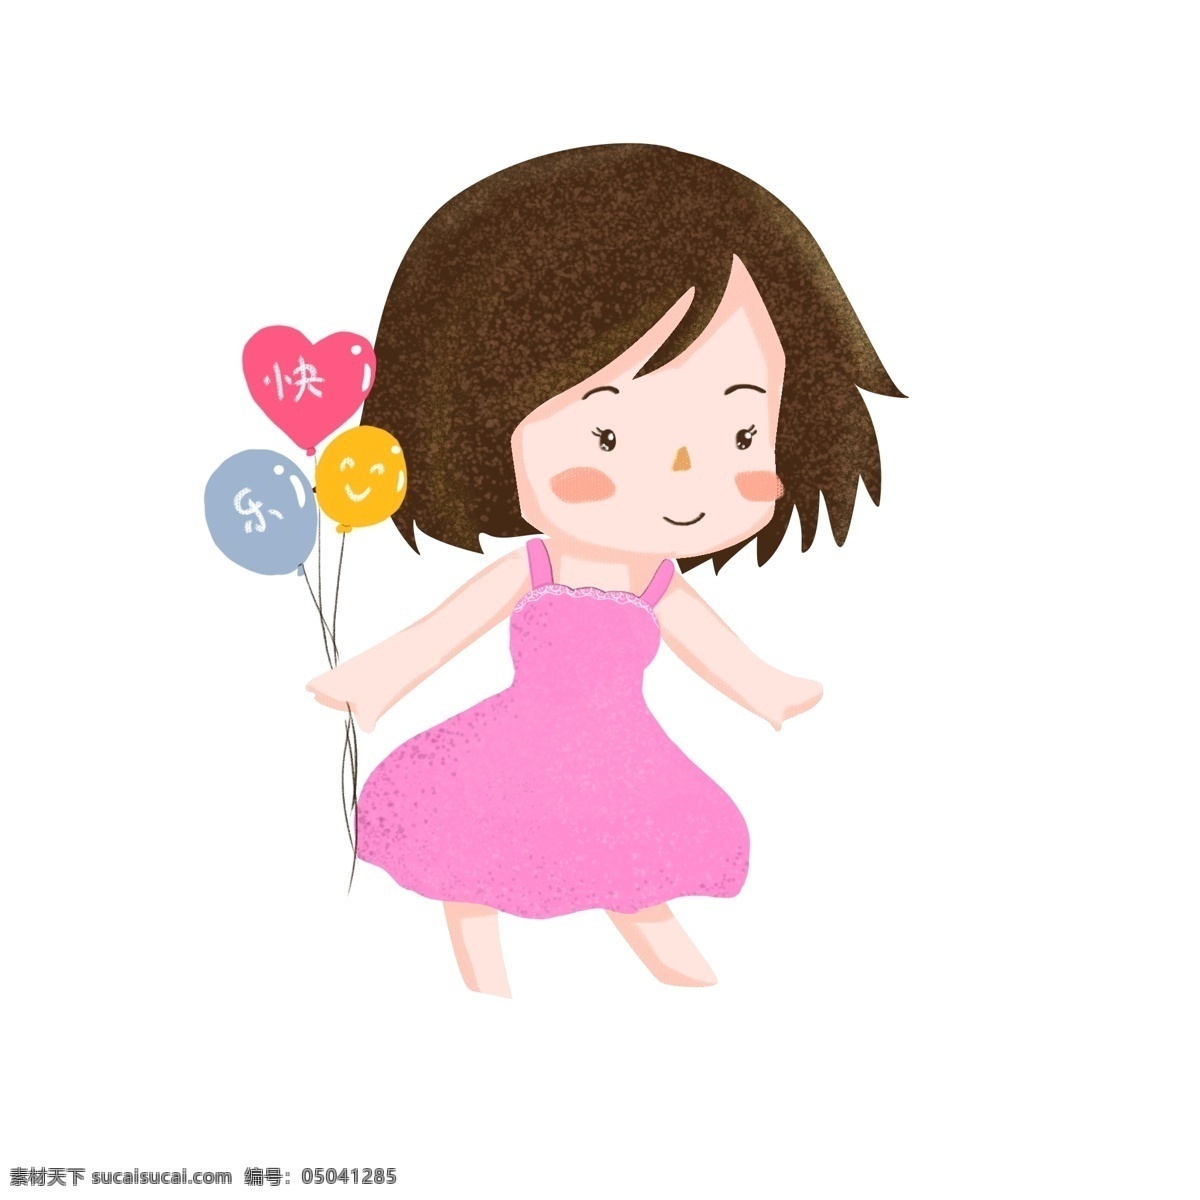 六 彩色 气球 女孩 快乐 儿童节 原创 元素 彩色气球 快乐节日 六一儿童节 六月 节日 礼物 玩具 玩耍 庆祝 粉色裙子 噪点 微笑的女孩 短发女孩